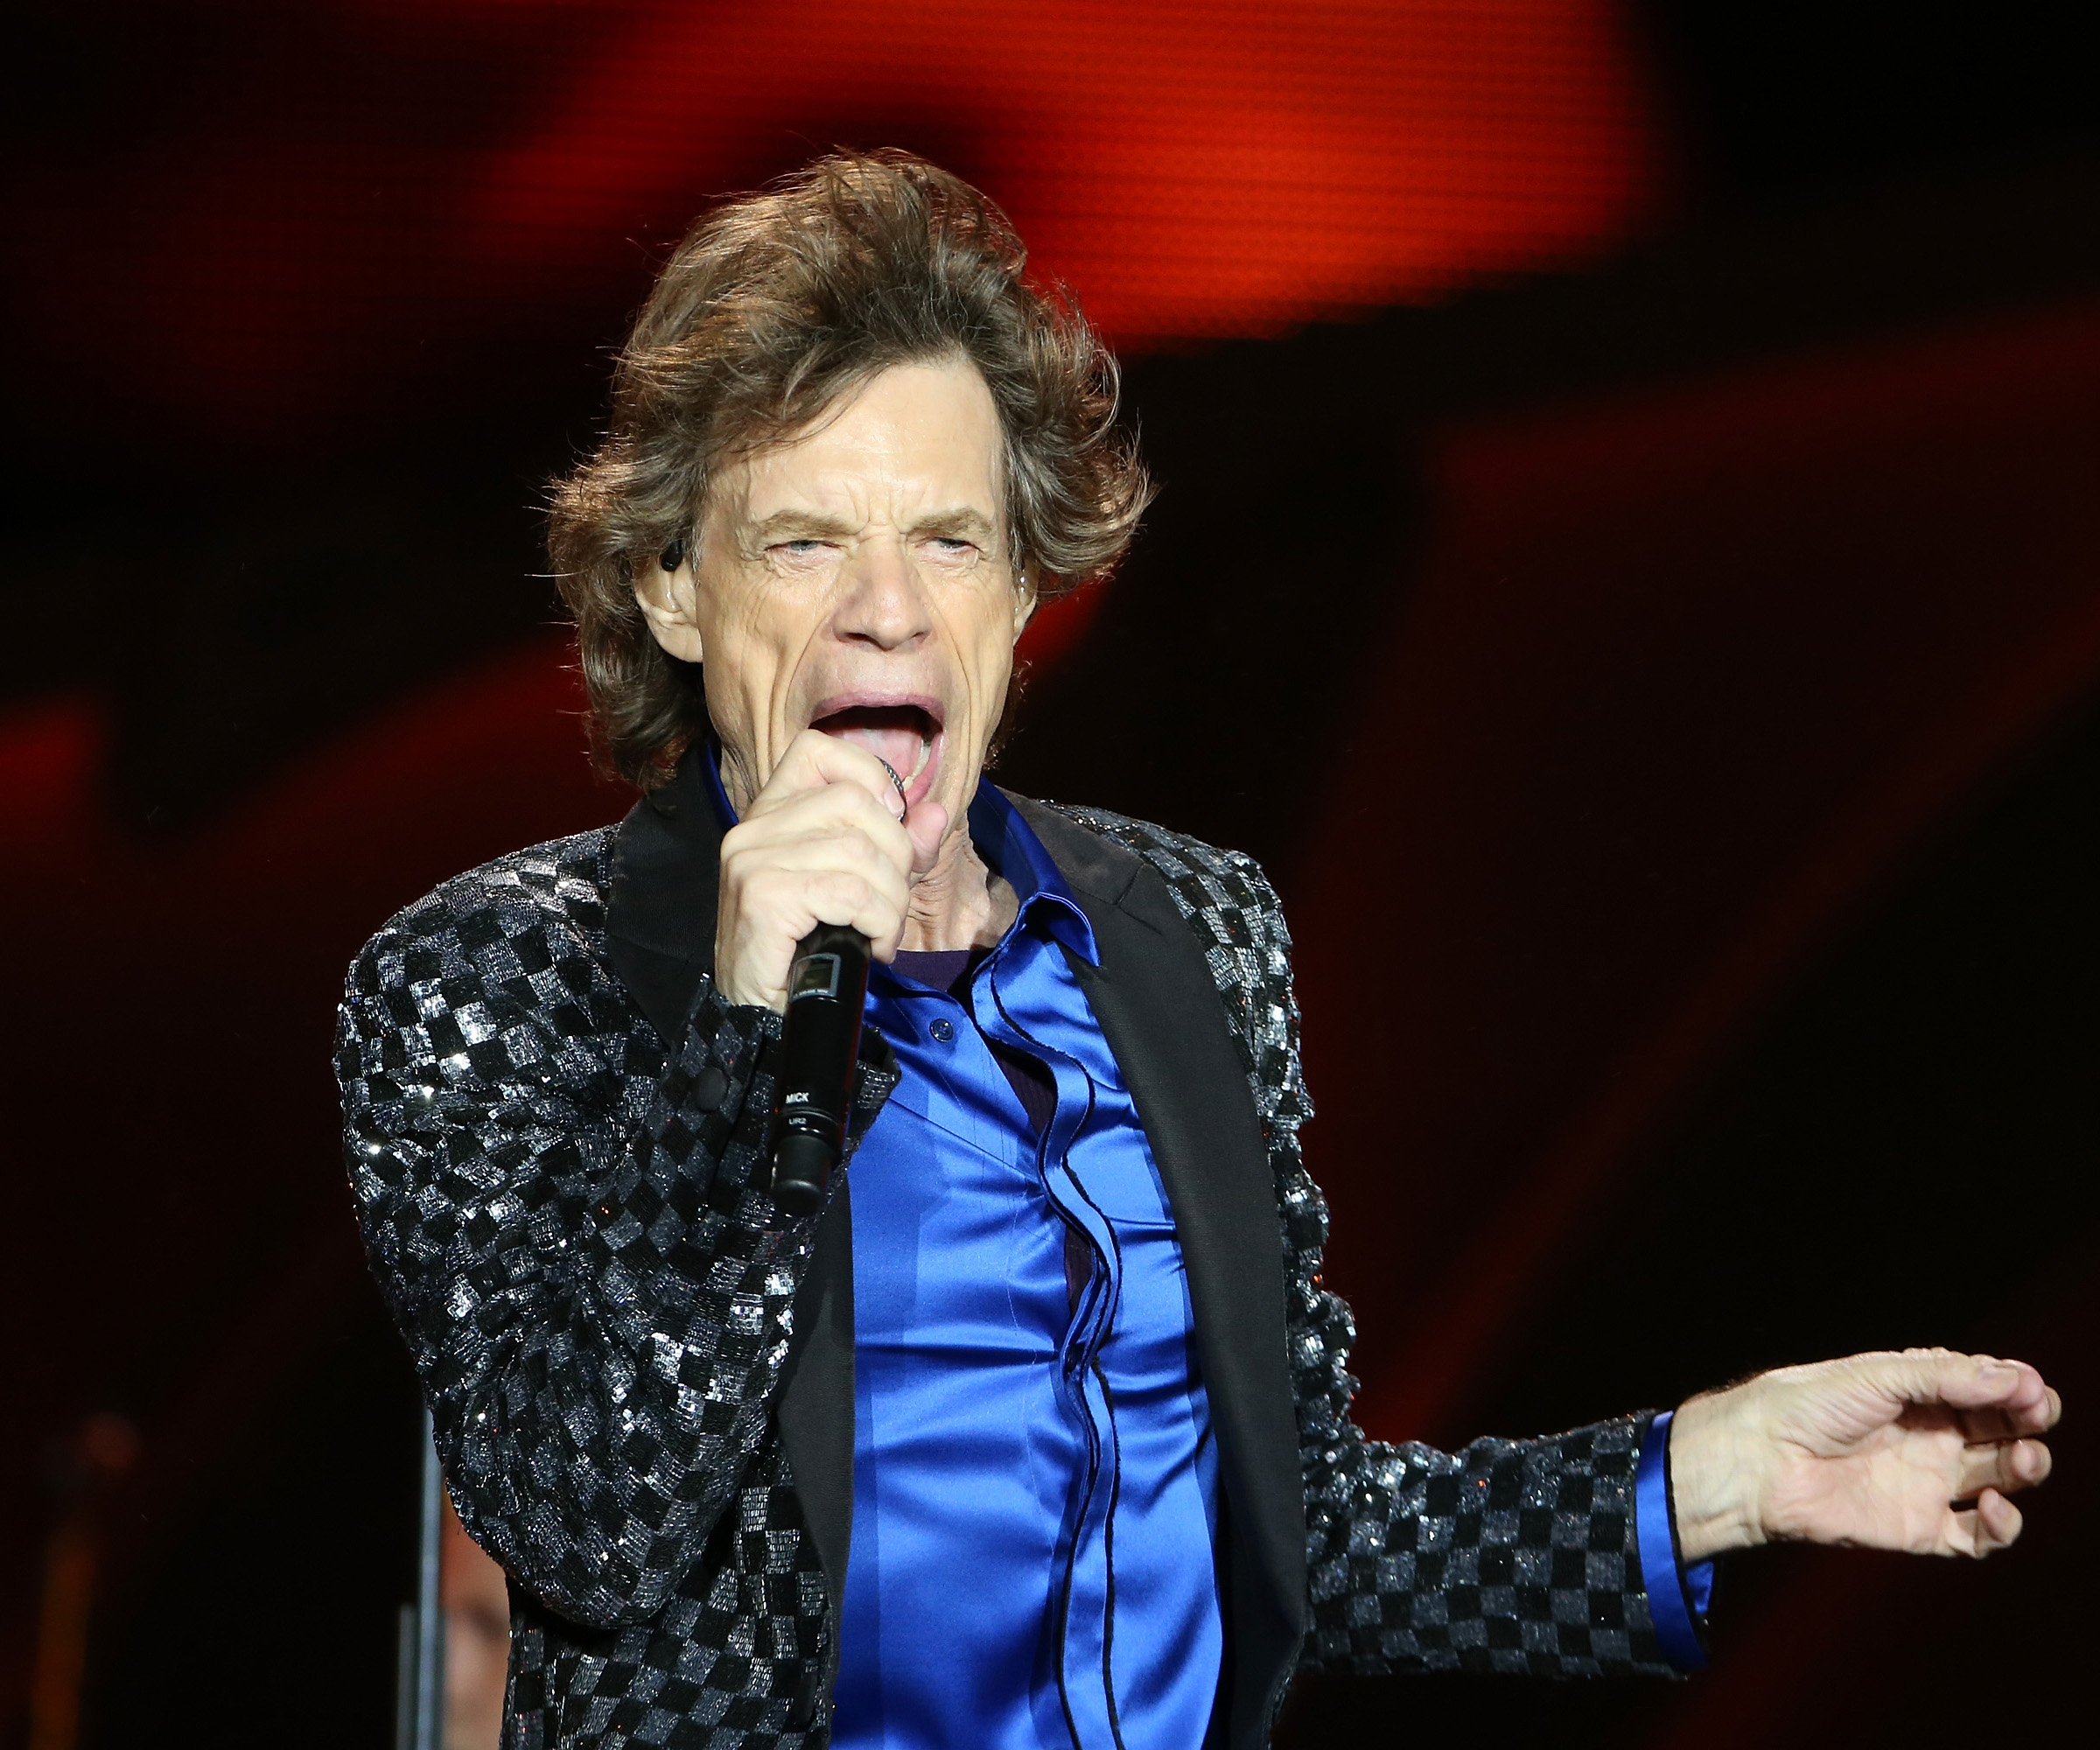 Mick Jagger expecting baby at 72